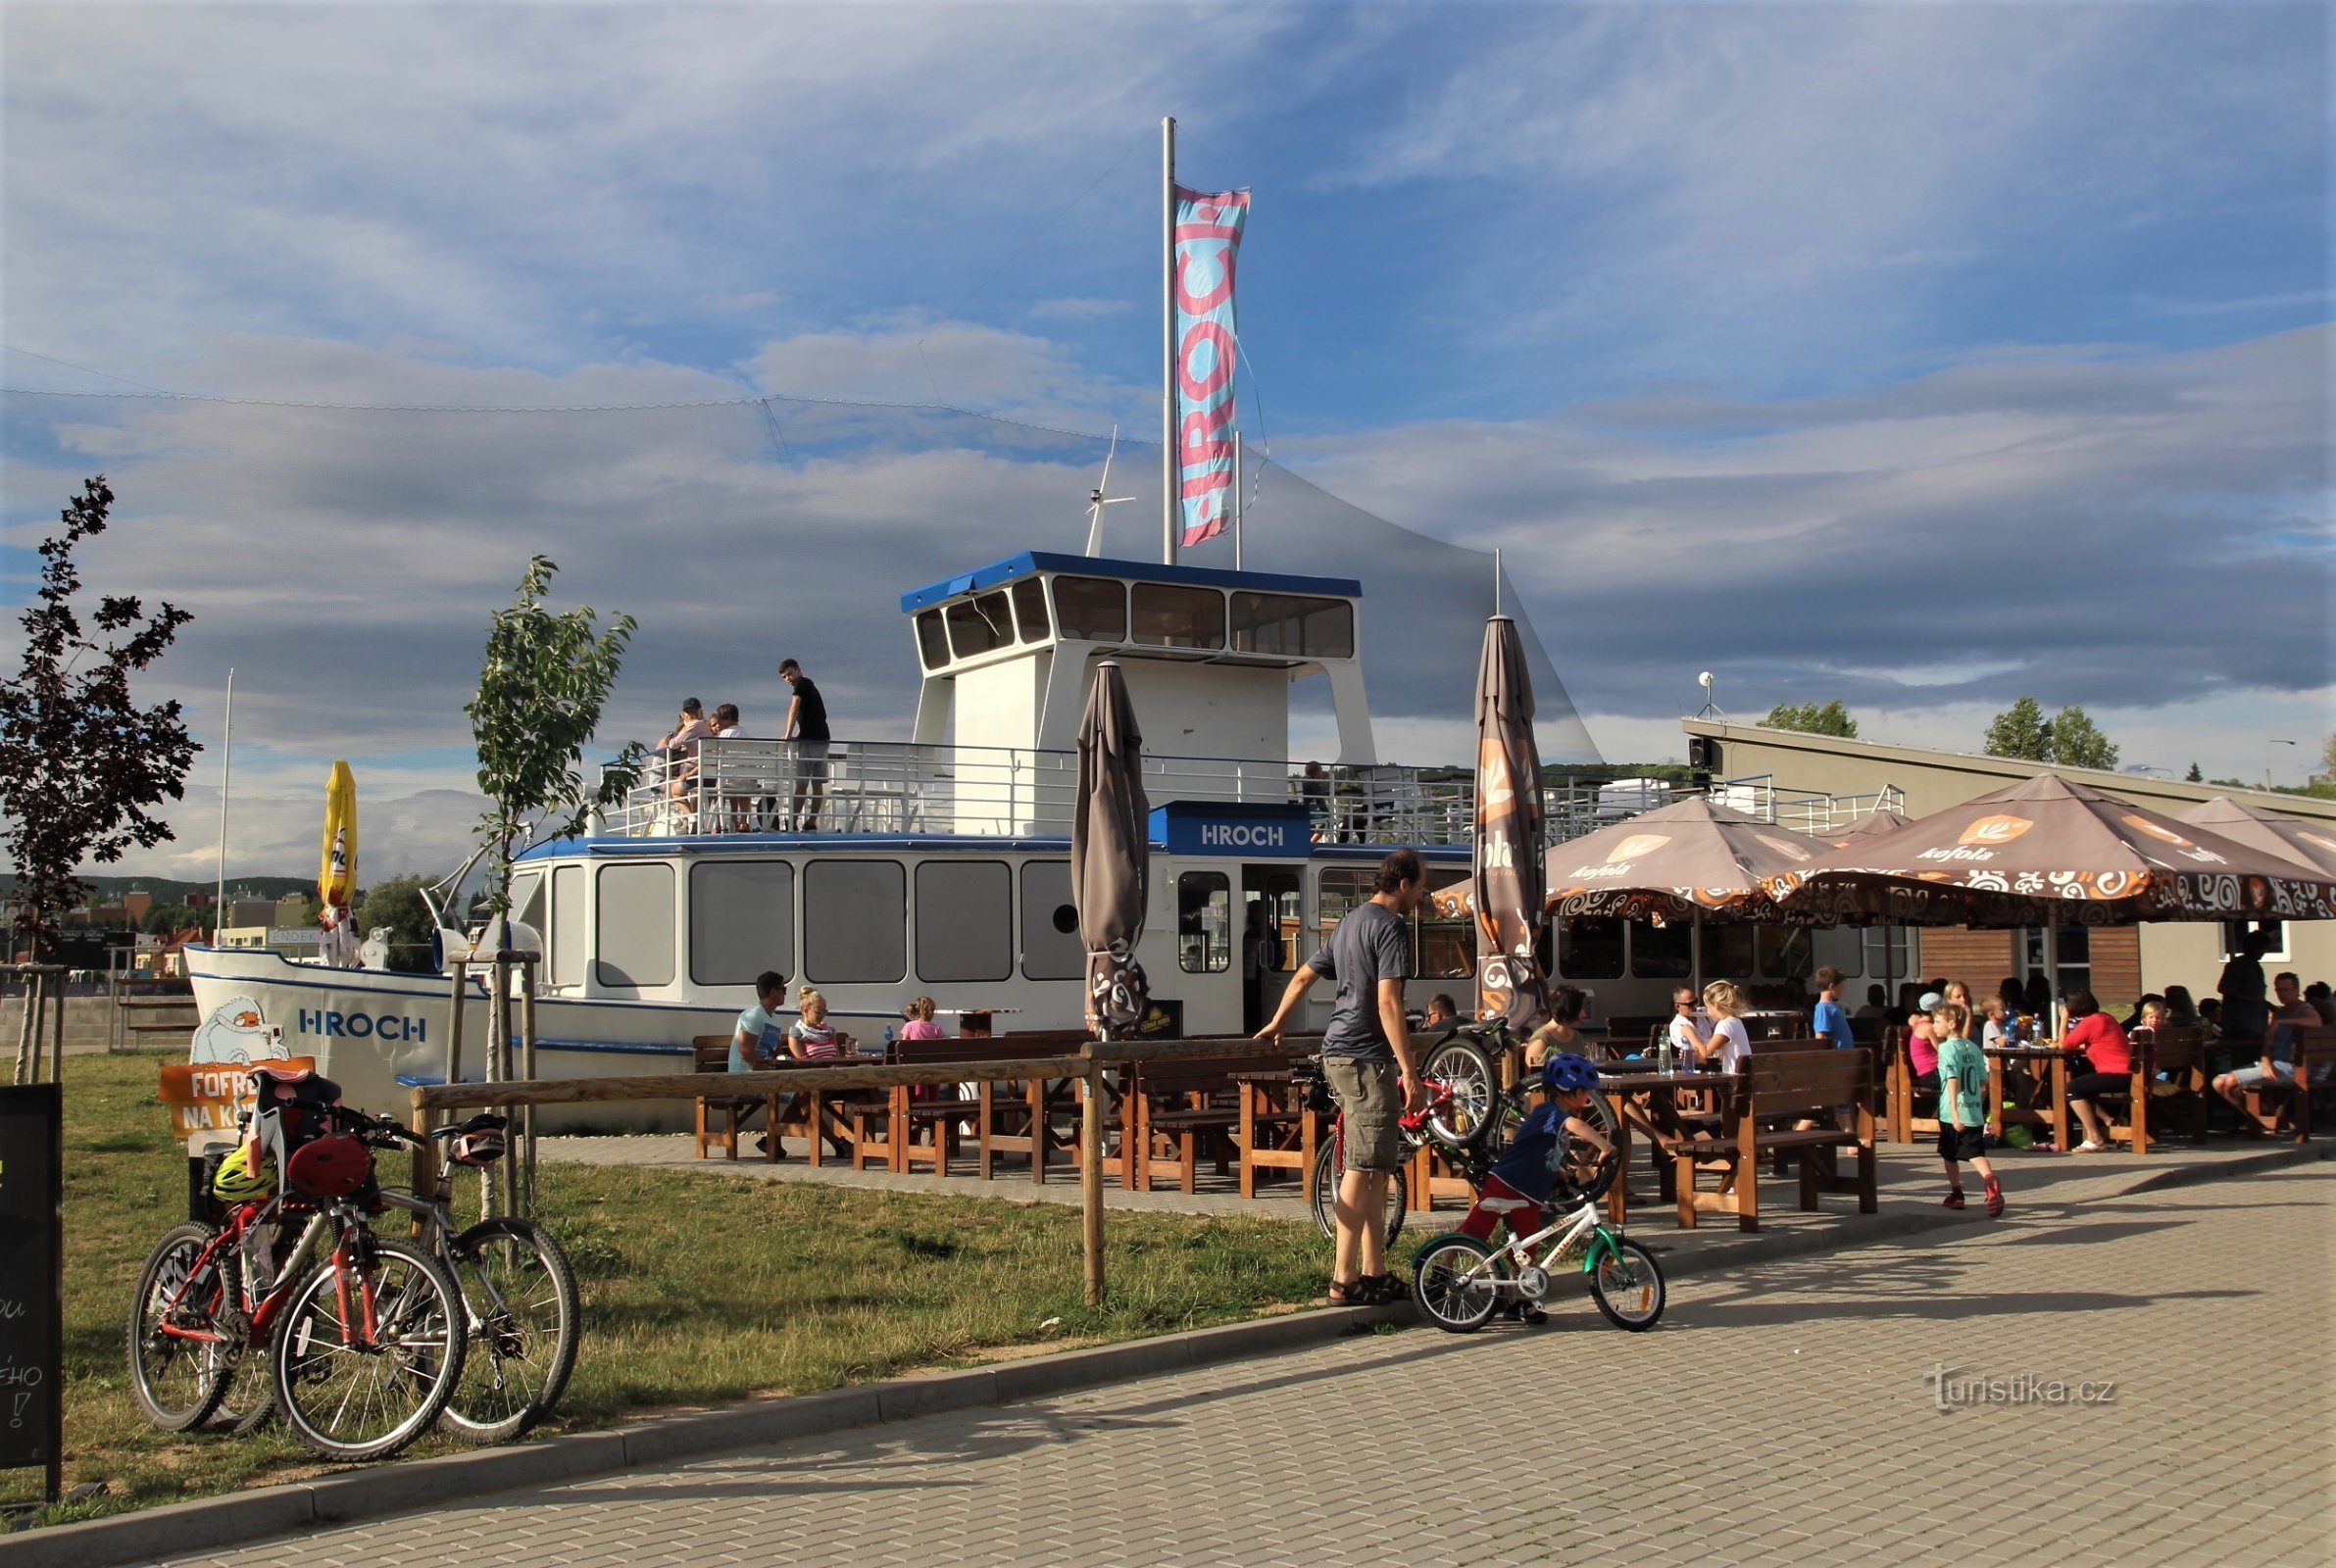 Ở trung tâm của khu phức hợp là tàu hơi nước Hroch, phục vụ như một quán rượu nhỏ theo mùa